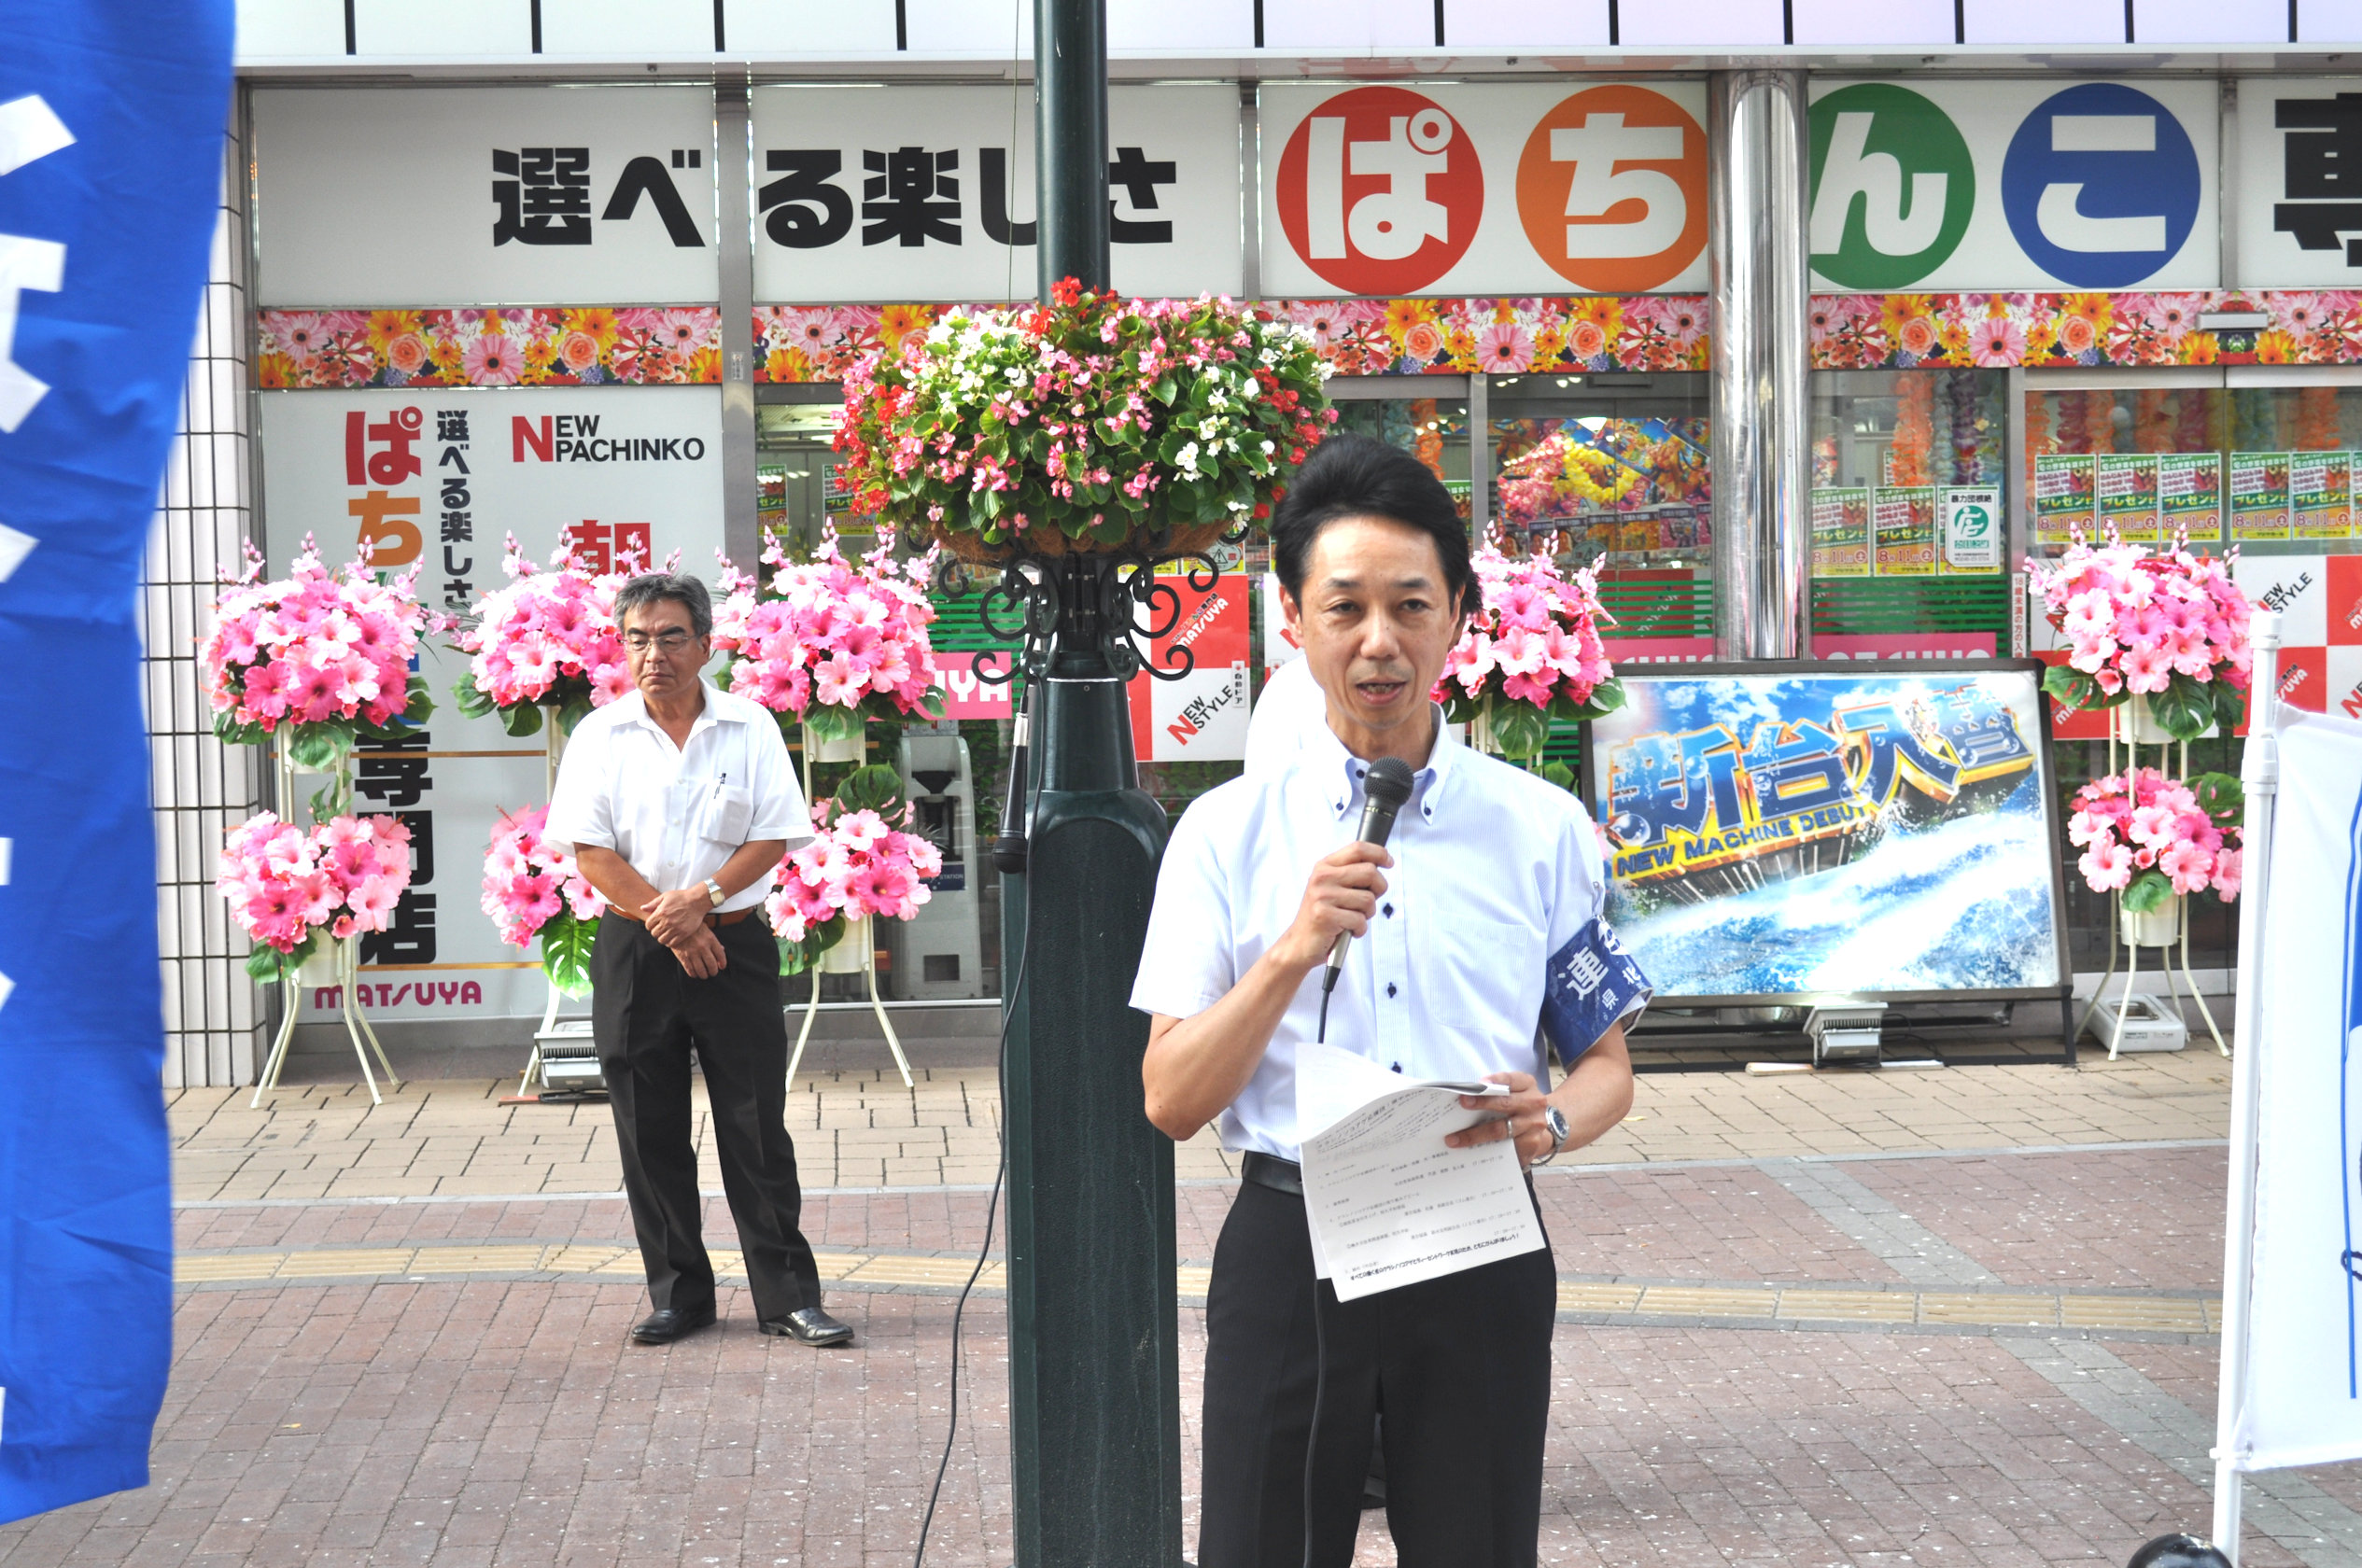 応援団の取り組み「働き方改革、最低賃金、恒久平和」を訴える 遠藤和也 連合福島副会長